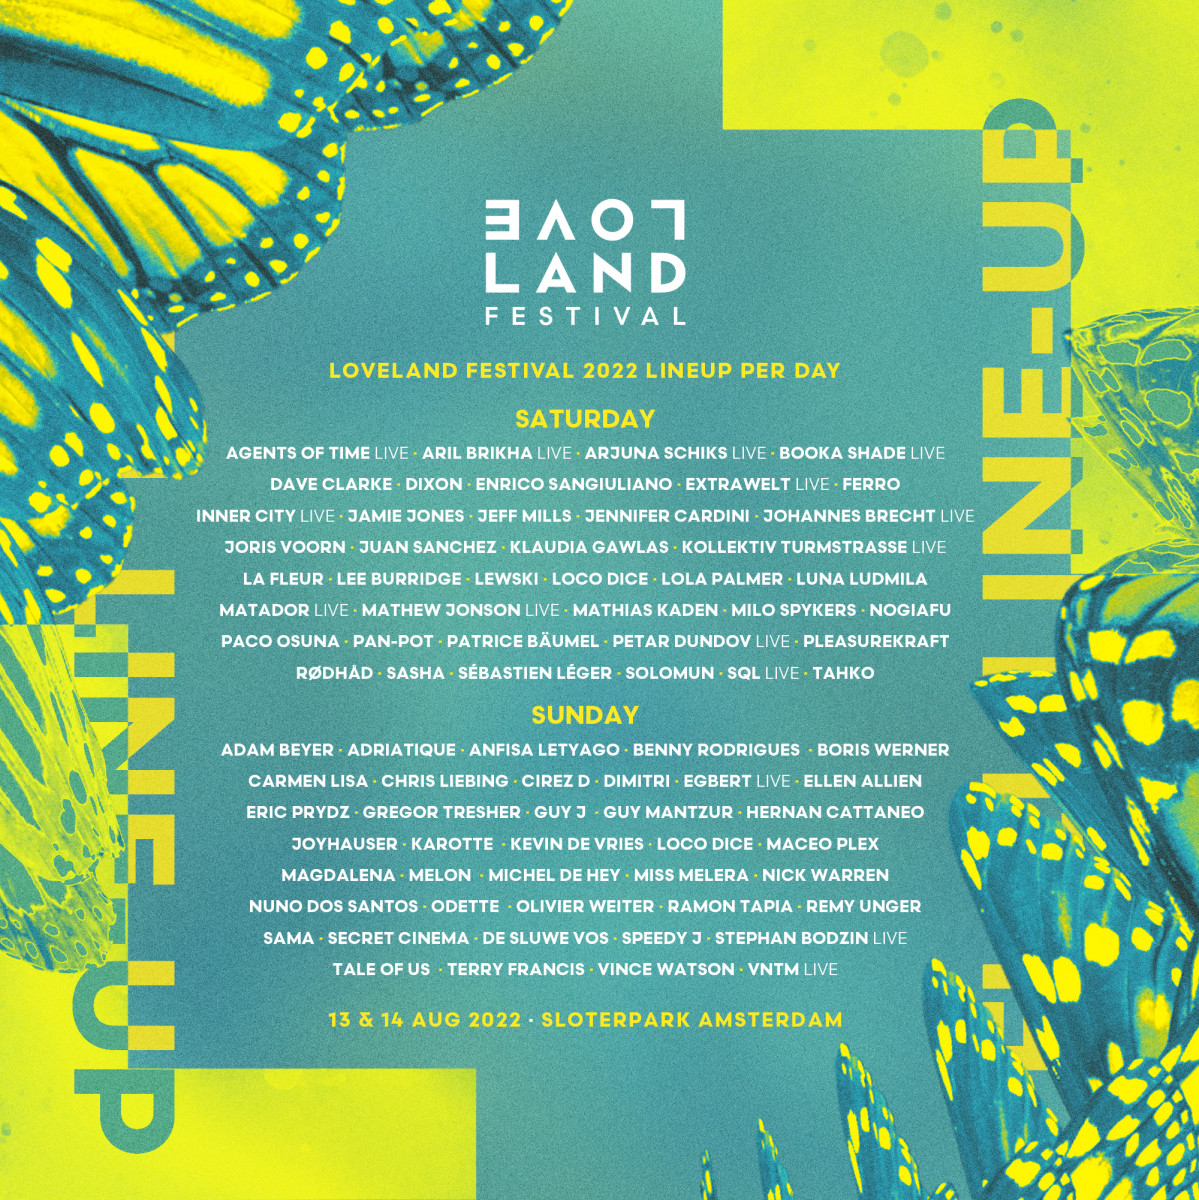 Loveland Festival 2022 lineup. 